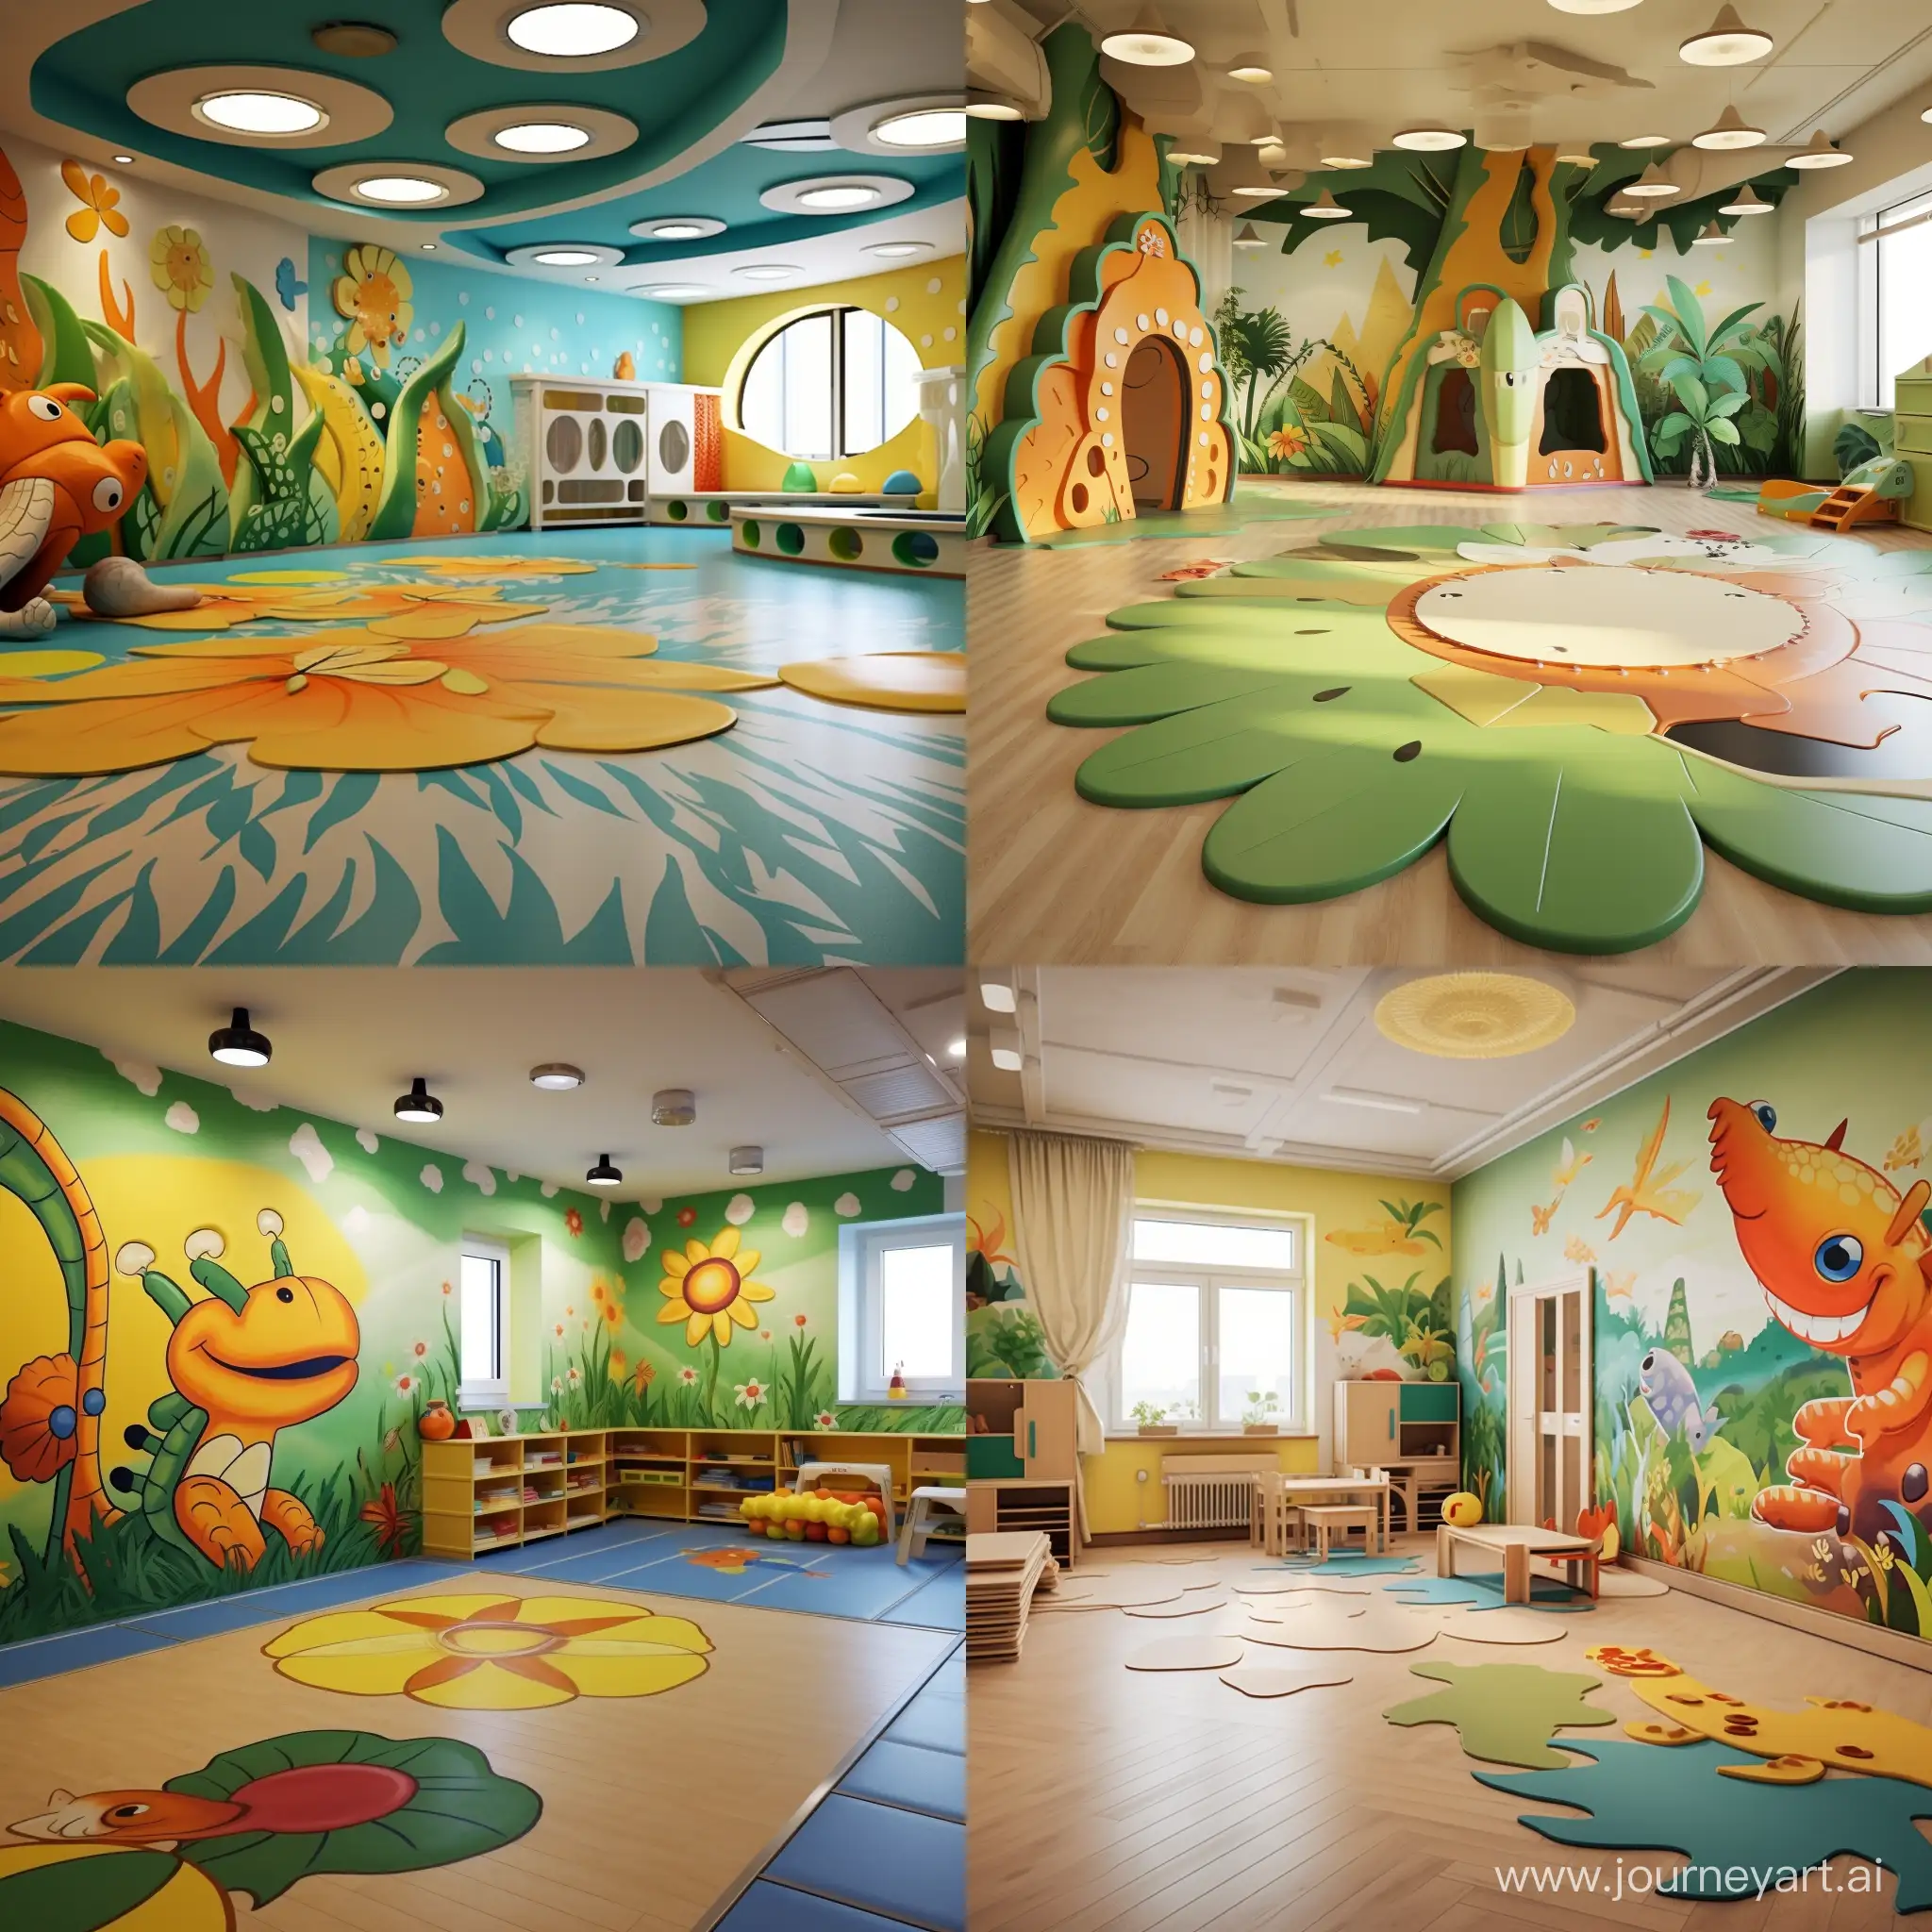 Innovative-Kindergarten-Playroom-Design-with-Interactive-Lizardthemed-Floor